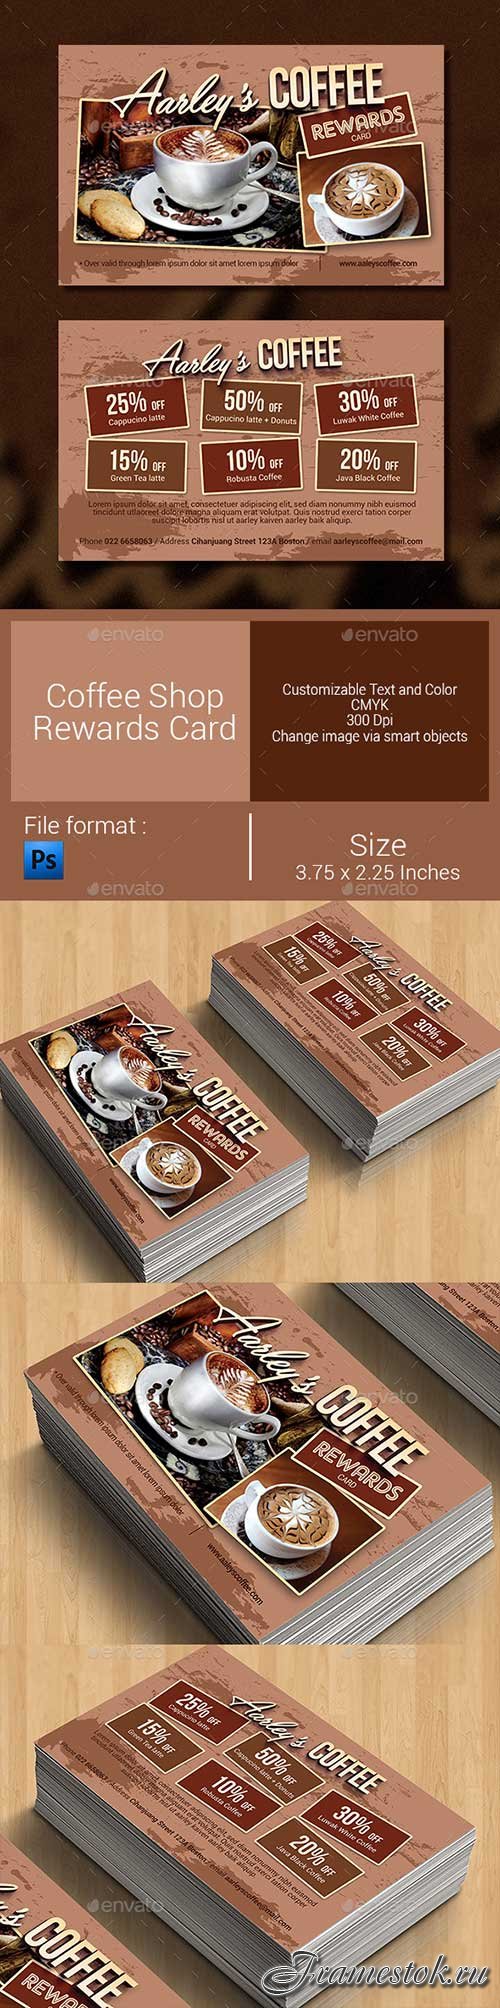 Graphicriver - Coffee Shop Rewards Card 9270673